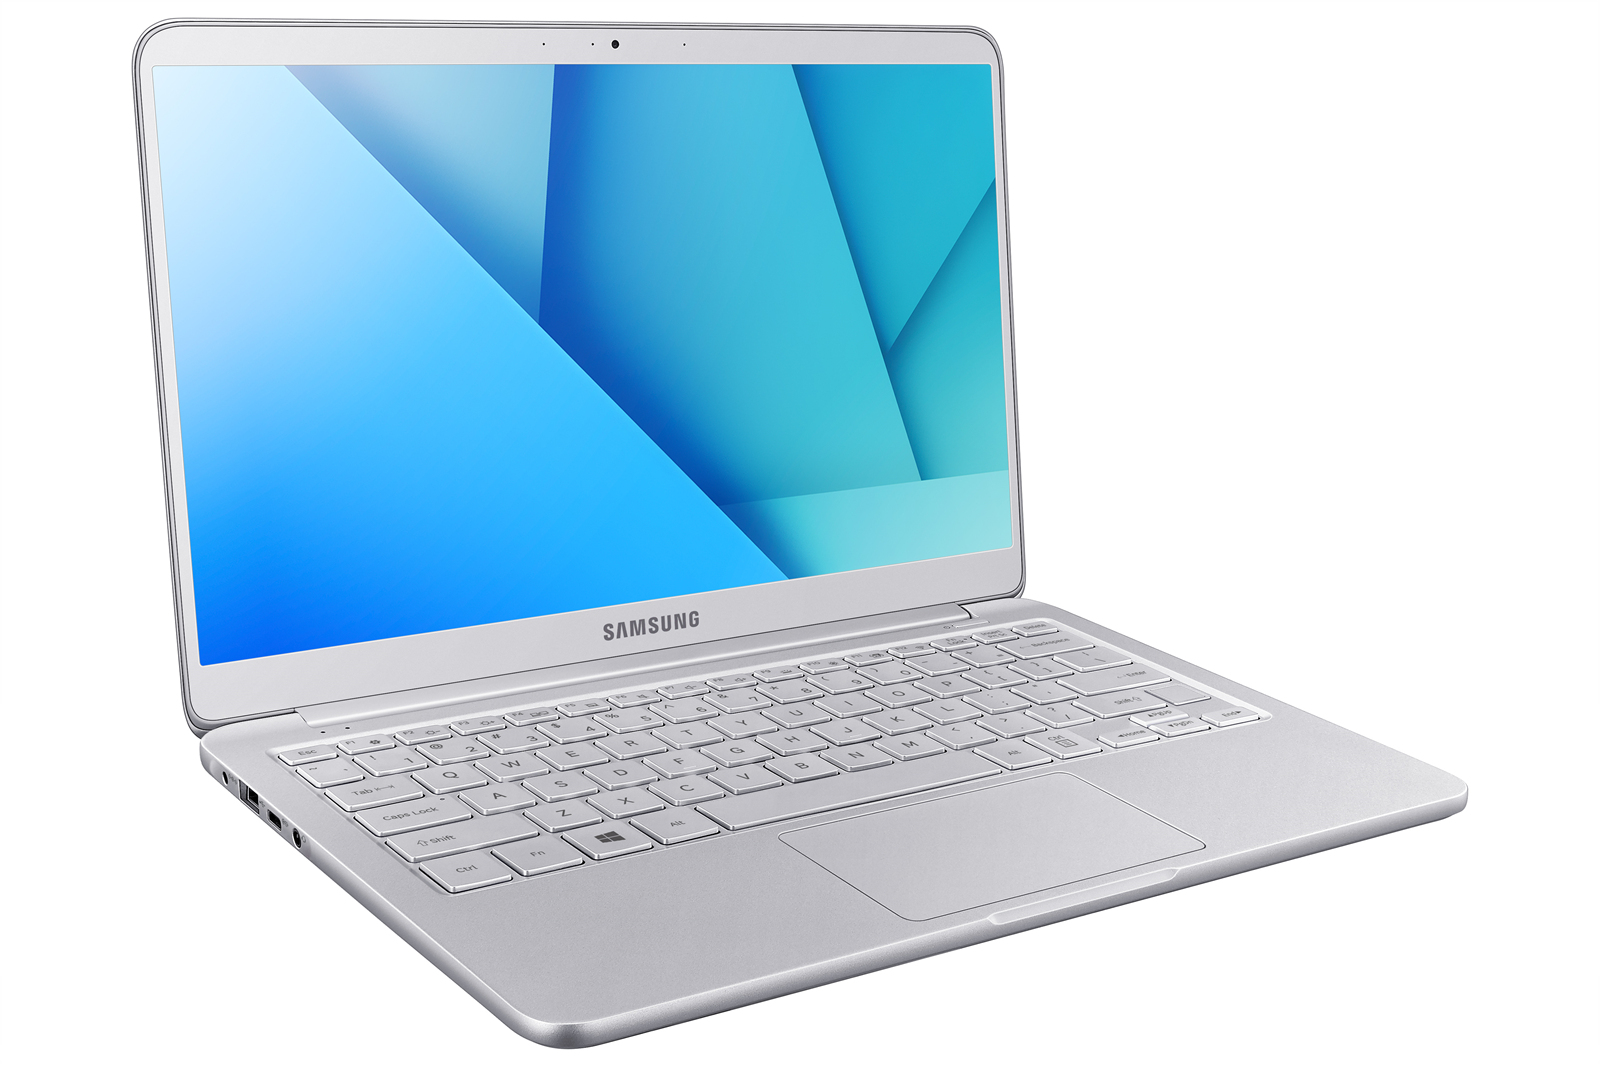 Notebook 9 : le nouvel ordinateur portable de Samsung plus ... - 1600 x 1067 jpeg 507kB